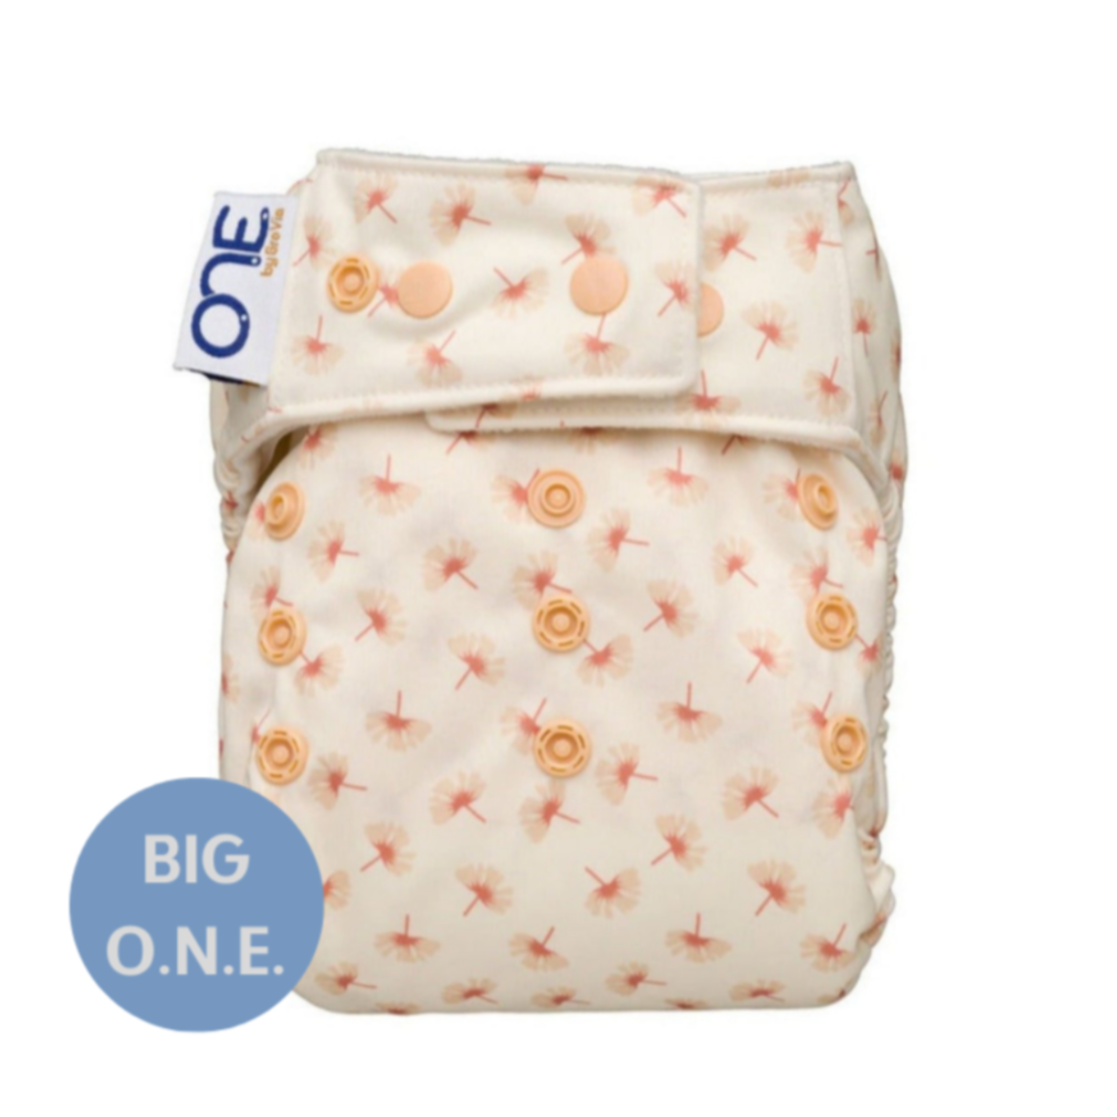 Big O.N.E. Big O.N.E. Cloth Diaper - Whimsy